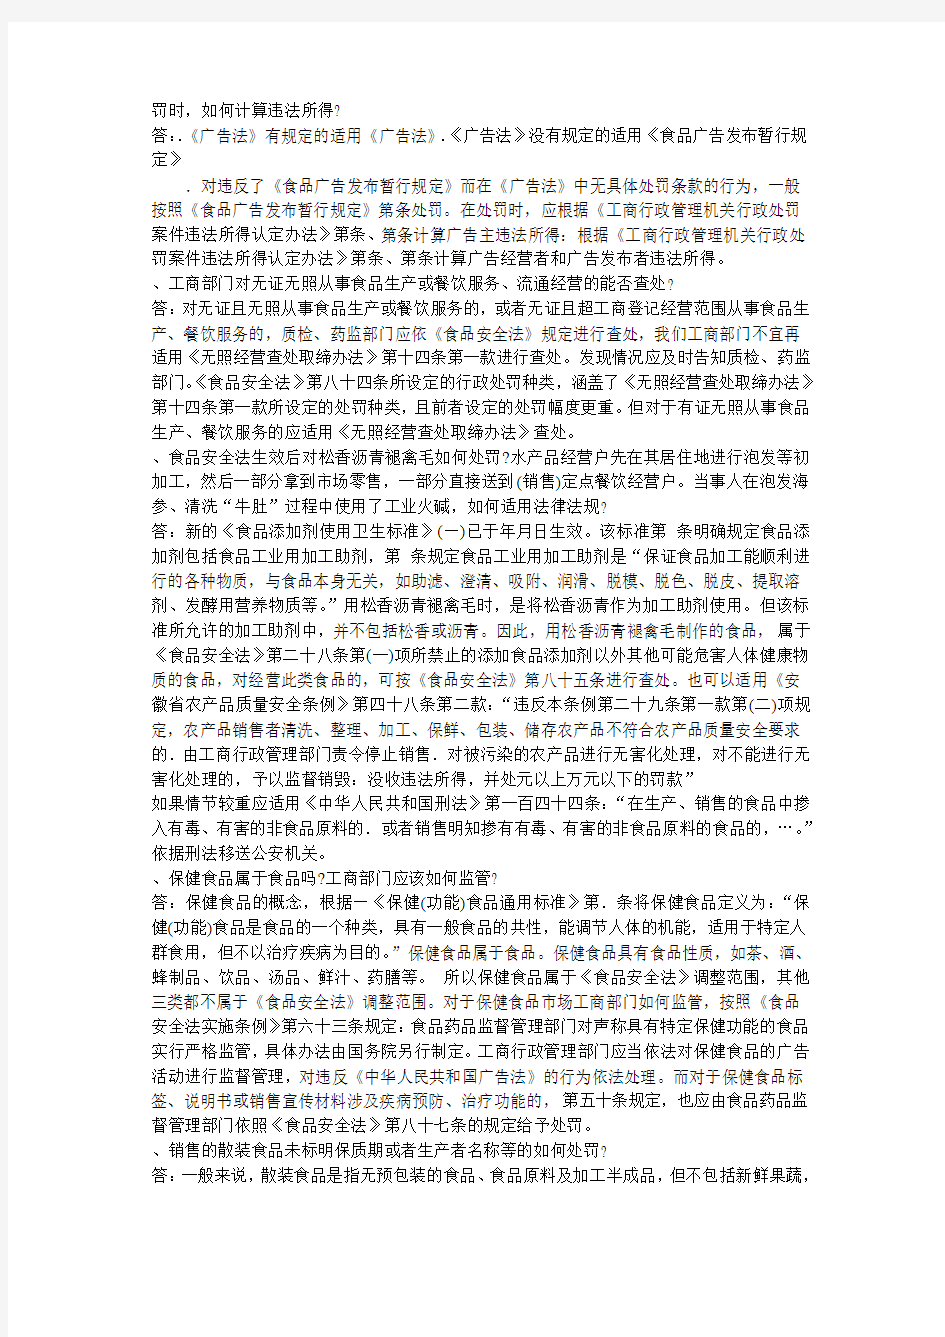 安徽省工商局法规处郑舒玉处长关于行政执法有关疑难问题的解答